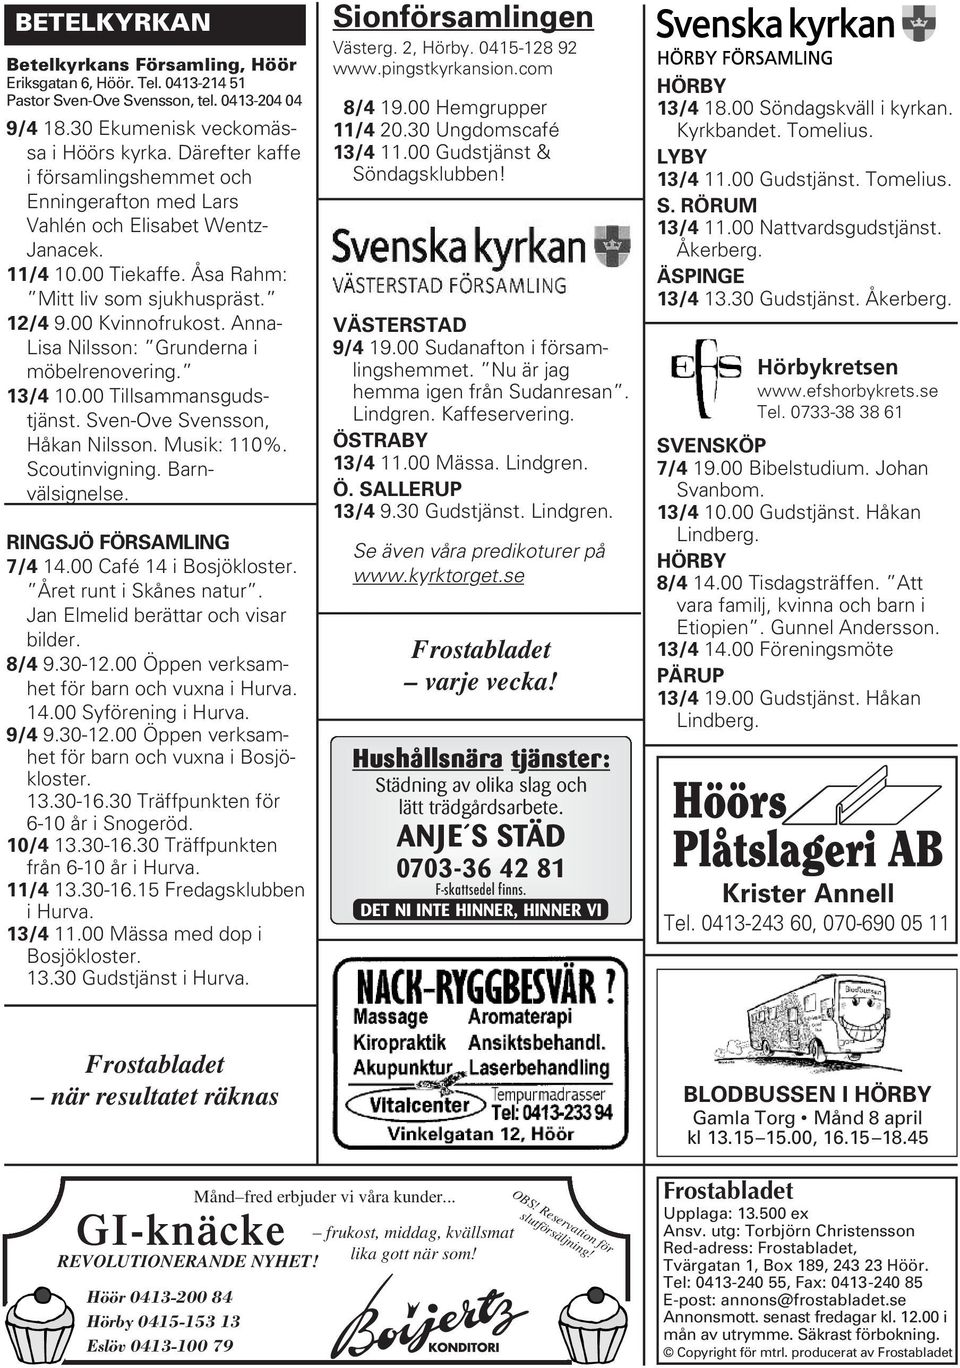 Anna- Lisa Nilsson: Grunderna i möbelrenovering. 13/4 10.00 Tillsammansgudstjänst. Sven-Ove Svensson, Håkan Nilsson. Musik: 110%. Scoutinvigning. Barnvälsignelse. RINGSJÖ FÖRSAMLING 7/4 14.